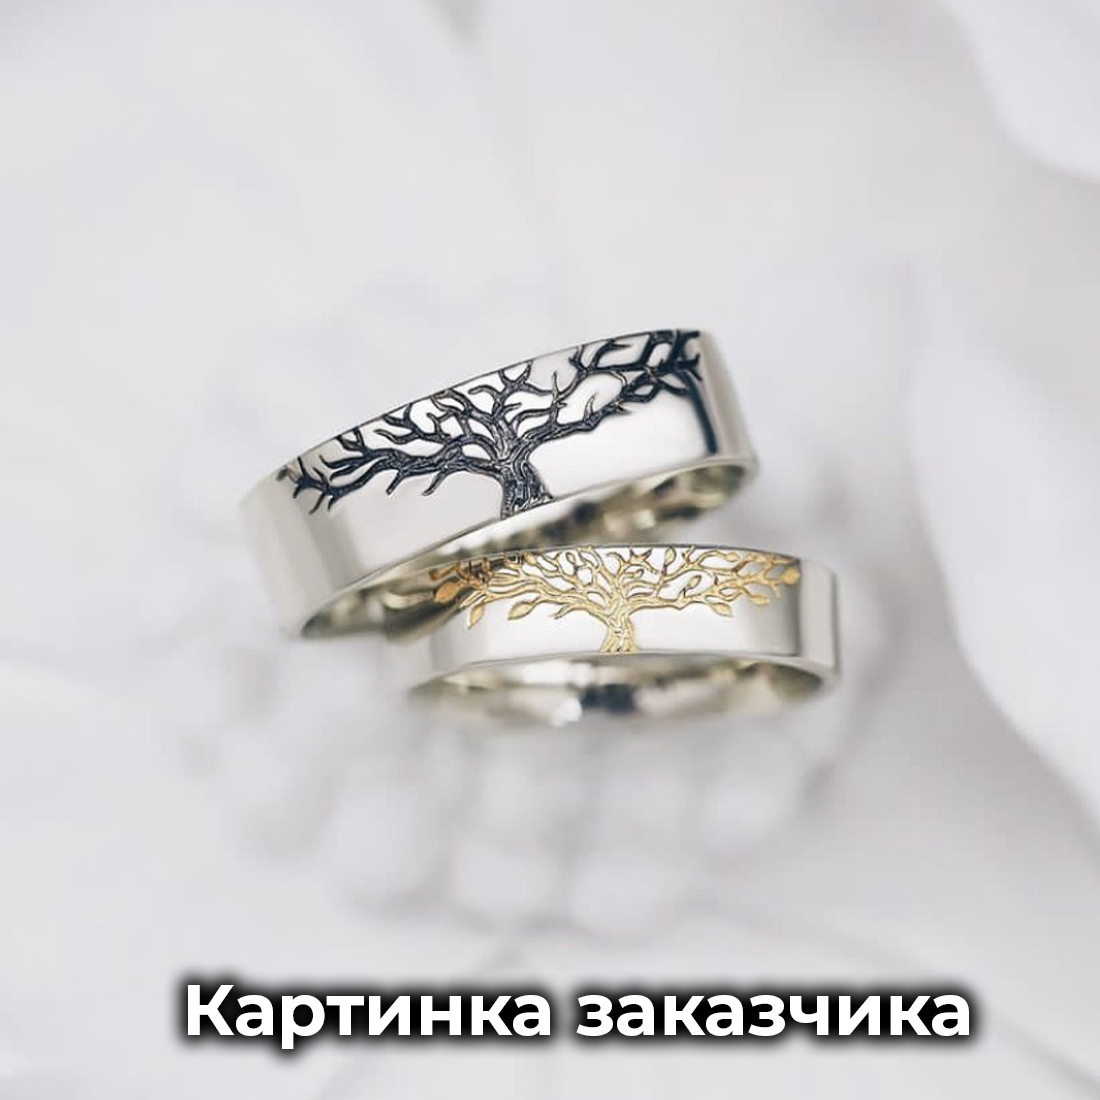 Обручальные кольца в виде пробкового дерева золотые